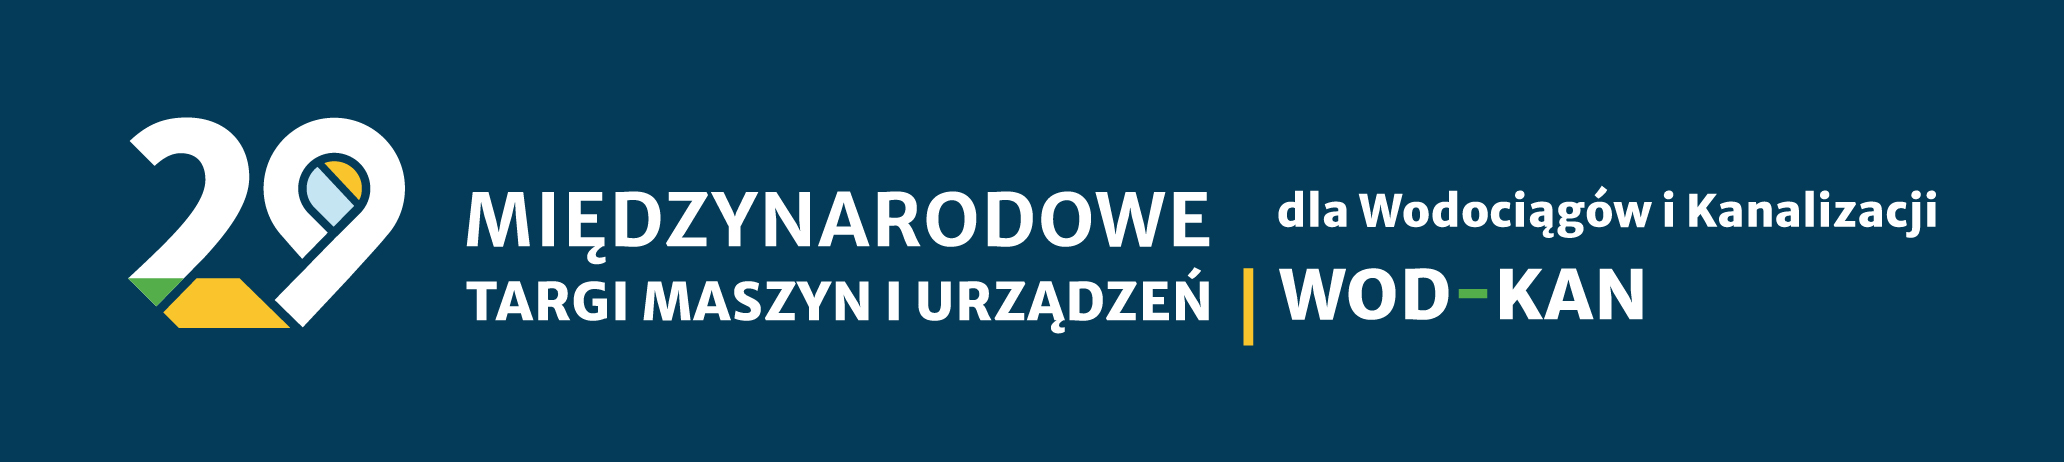 Zaproszenie na Targi WOD-KAN Bydgoszcz